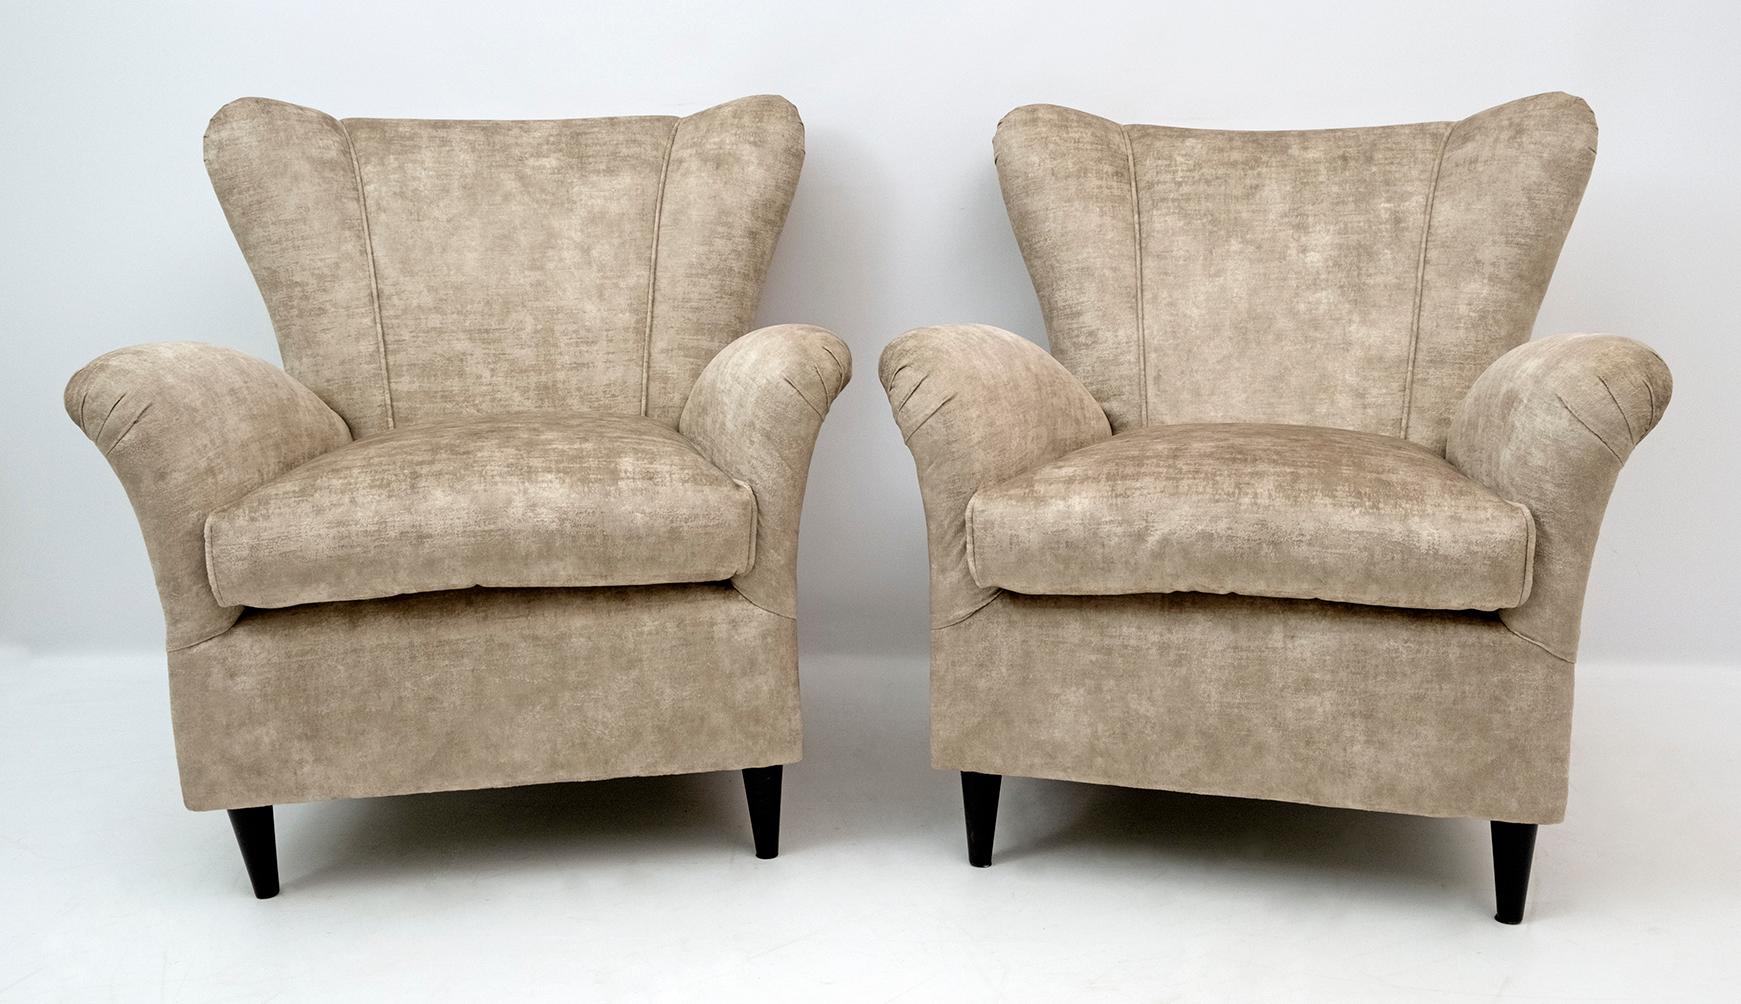 Élégante et splendide paire de fauteuils modernes du milieu du siècle, attribuée à Gio Ponti, 1950 pour ISA Editions, Bergame. Profil sculpté, lignes raffinées, confort sensuel et profond. Les chaises sont recouvertes d'un nouveau velours à effet